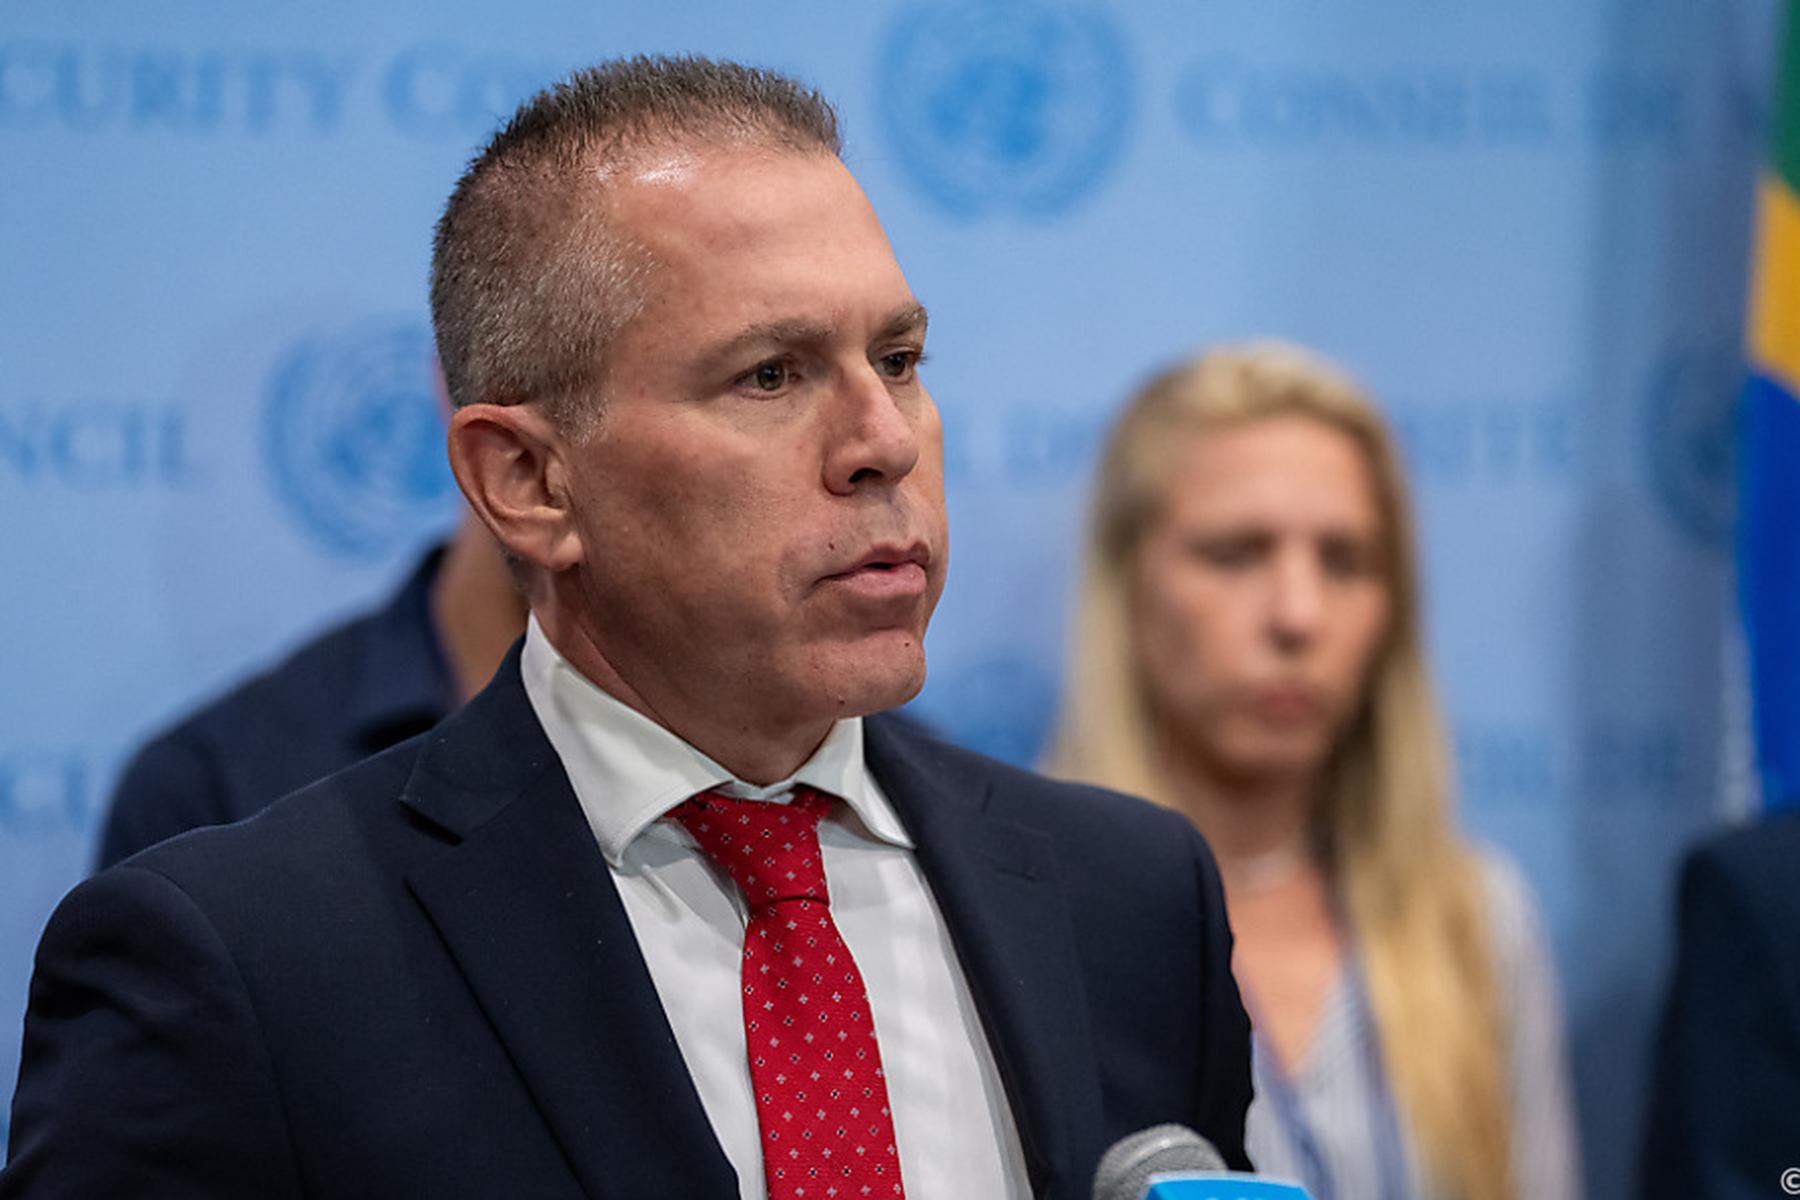 Nahost: Israel ruft seinen UN-Botschafter für Konsultationen zurück